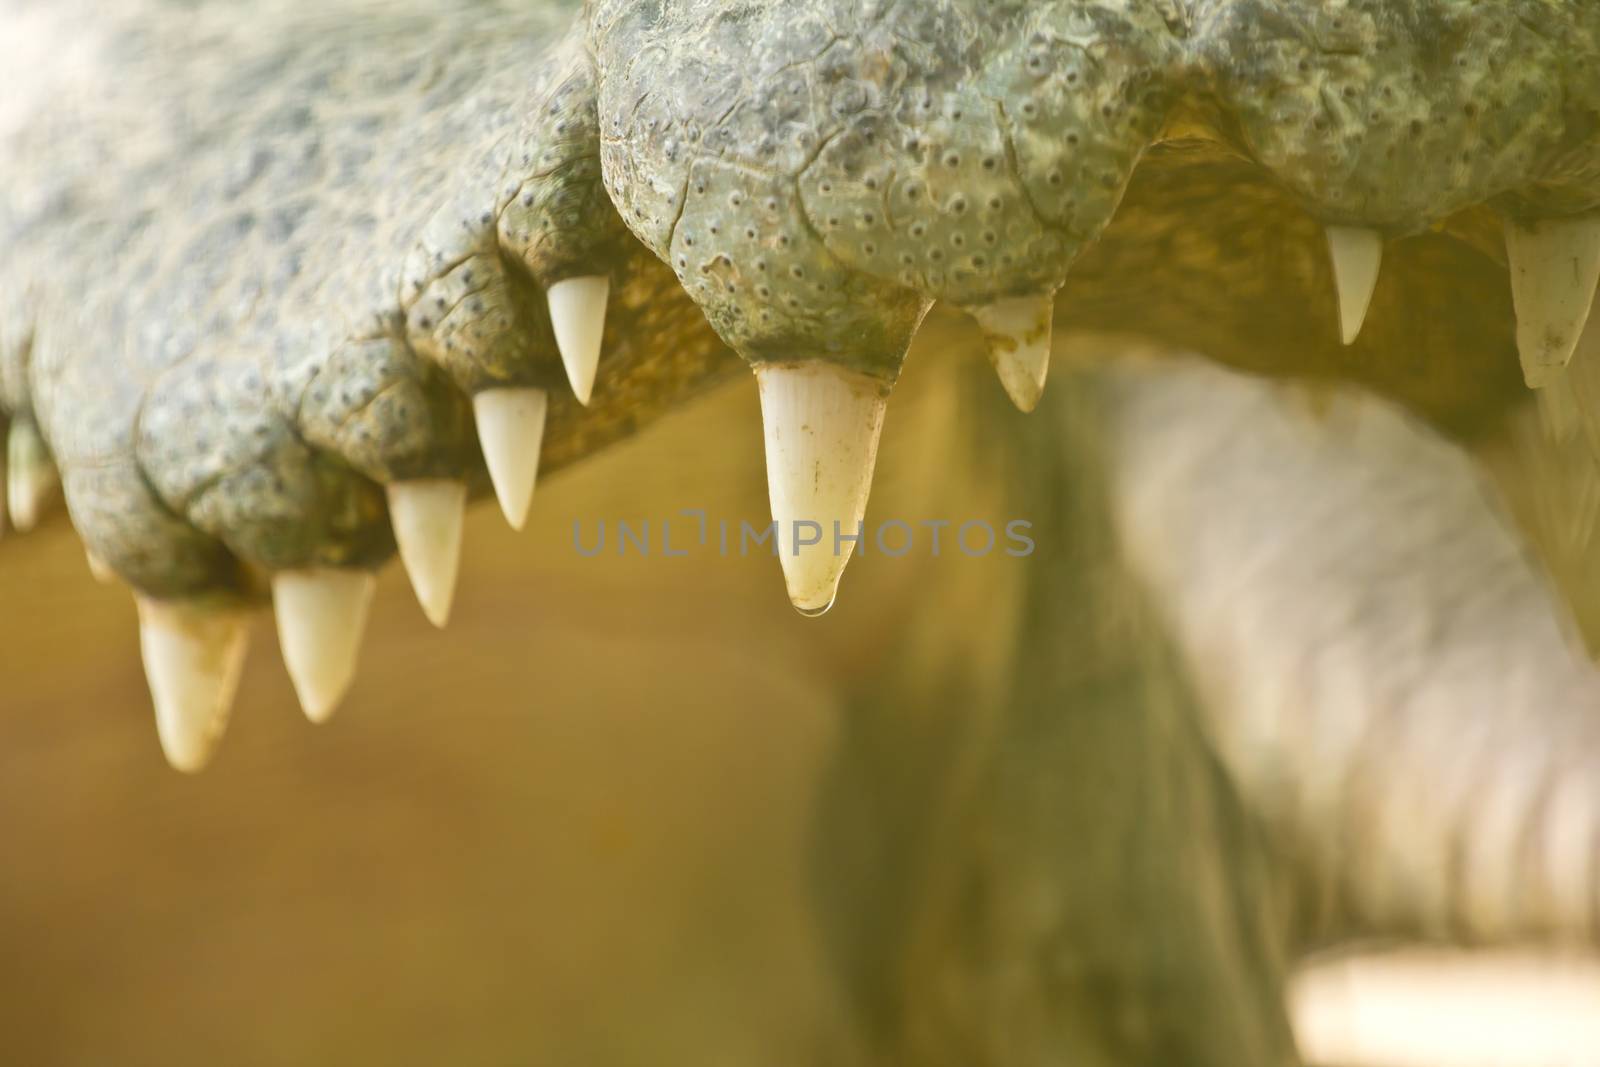 Crocodile teeth (Focus on teeth)